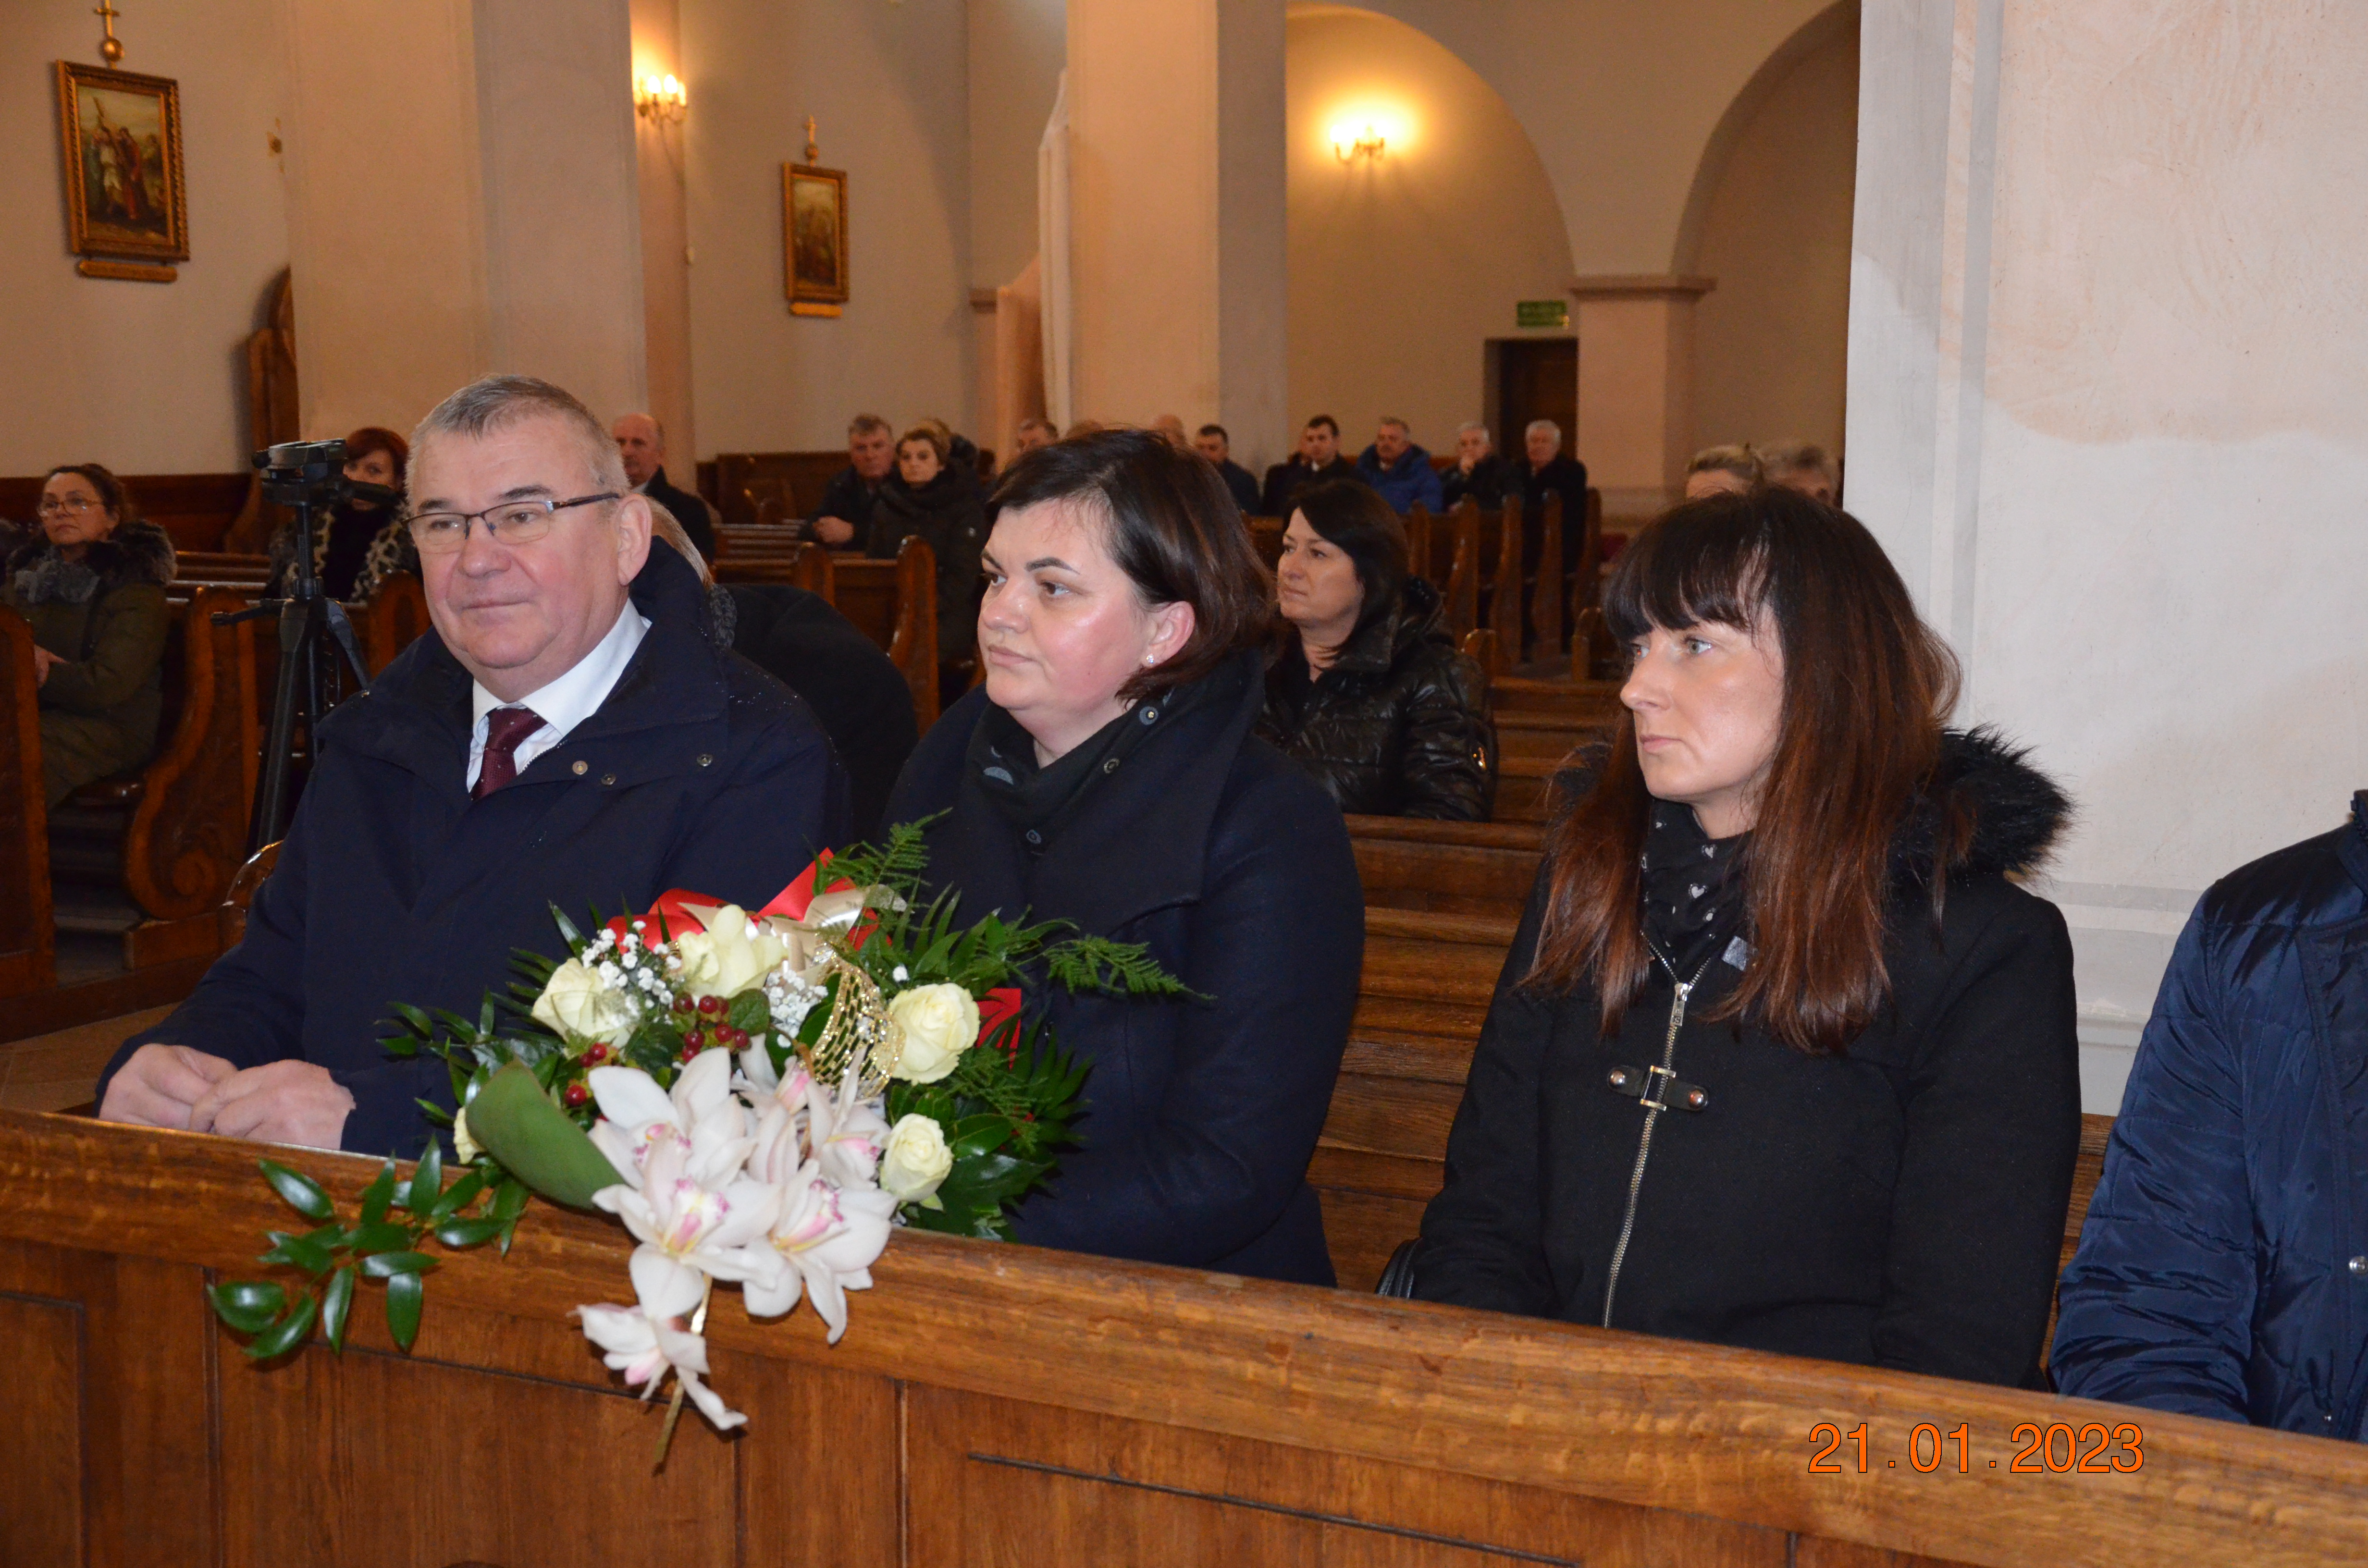 Mężczyzna oraz dwie kobiety siedzący w kościelnej ławie, kobieta trzyma w rękach bukiet kwiatów.